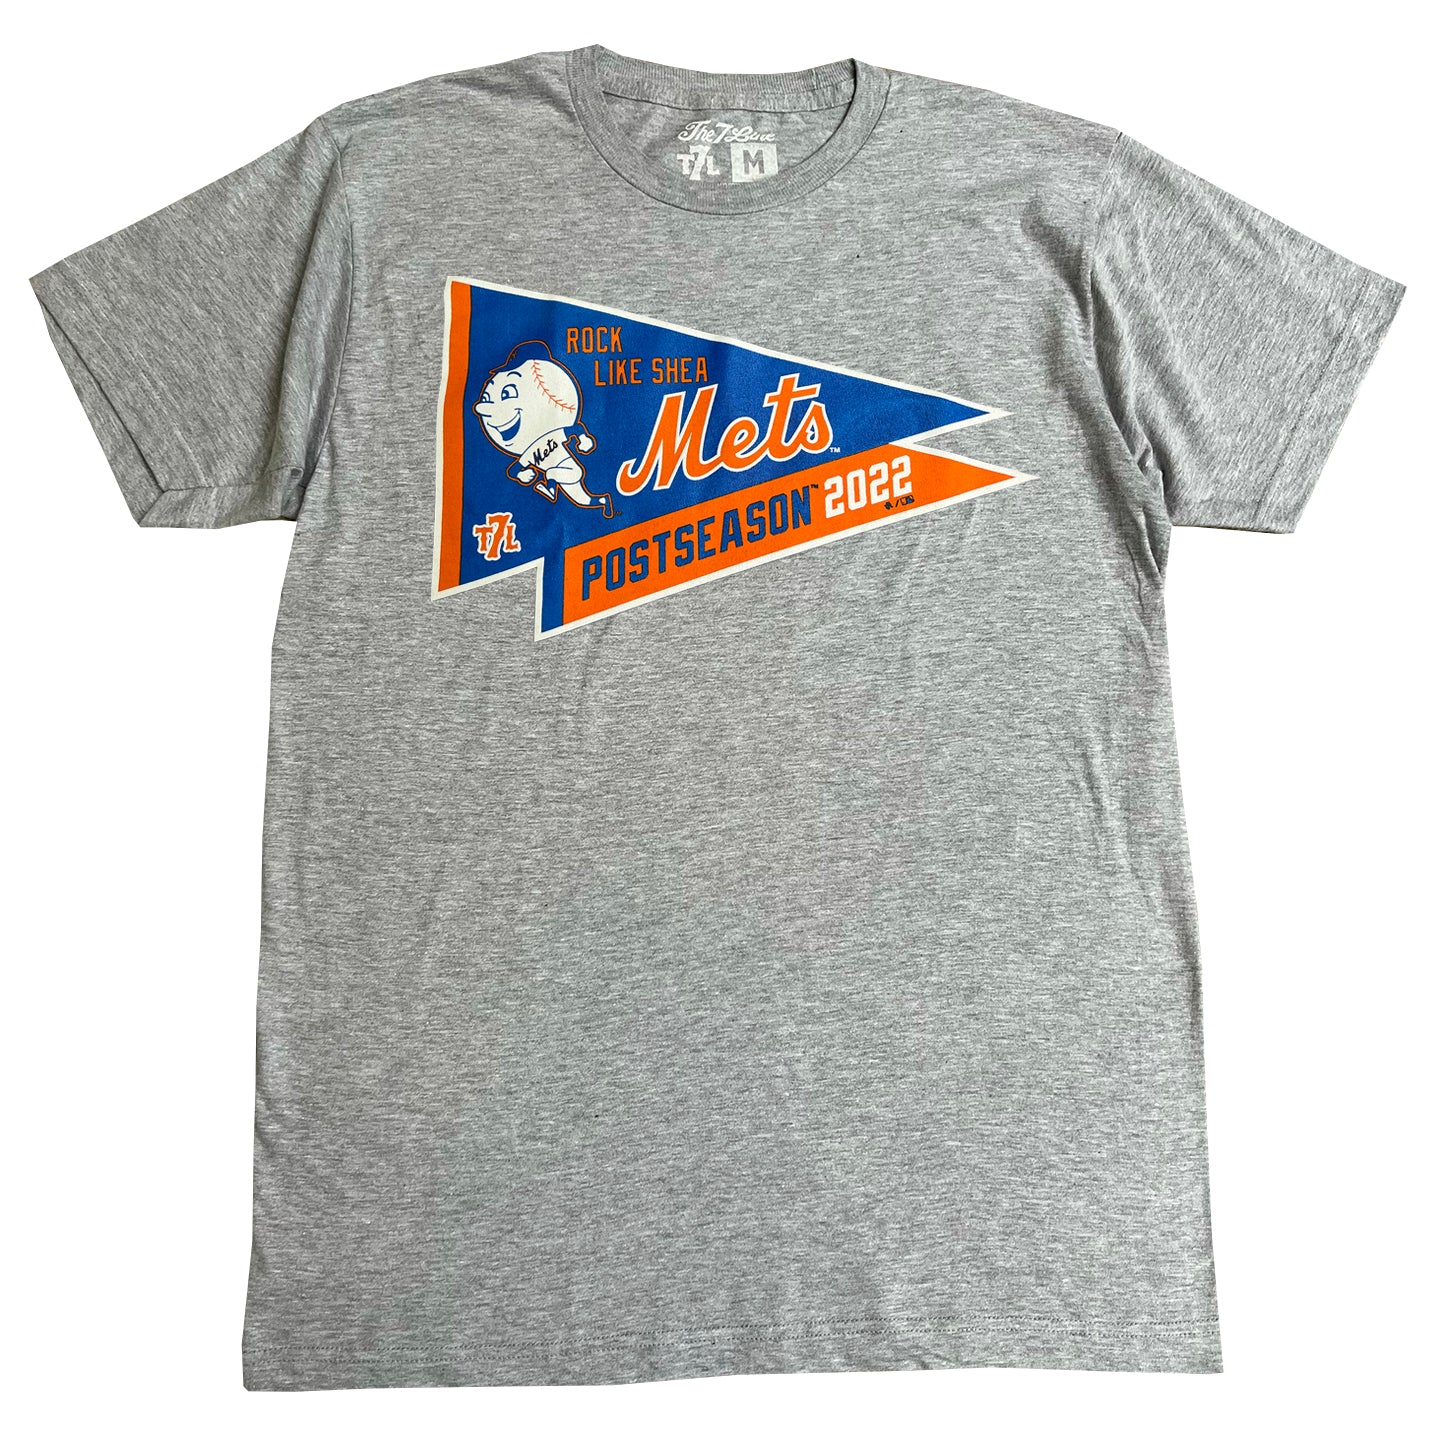 Postseason New York Mets The East Is Ours 2022 Shirt, hoodie